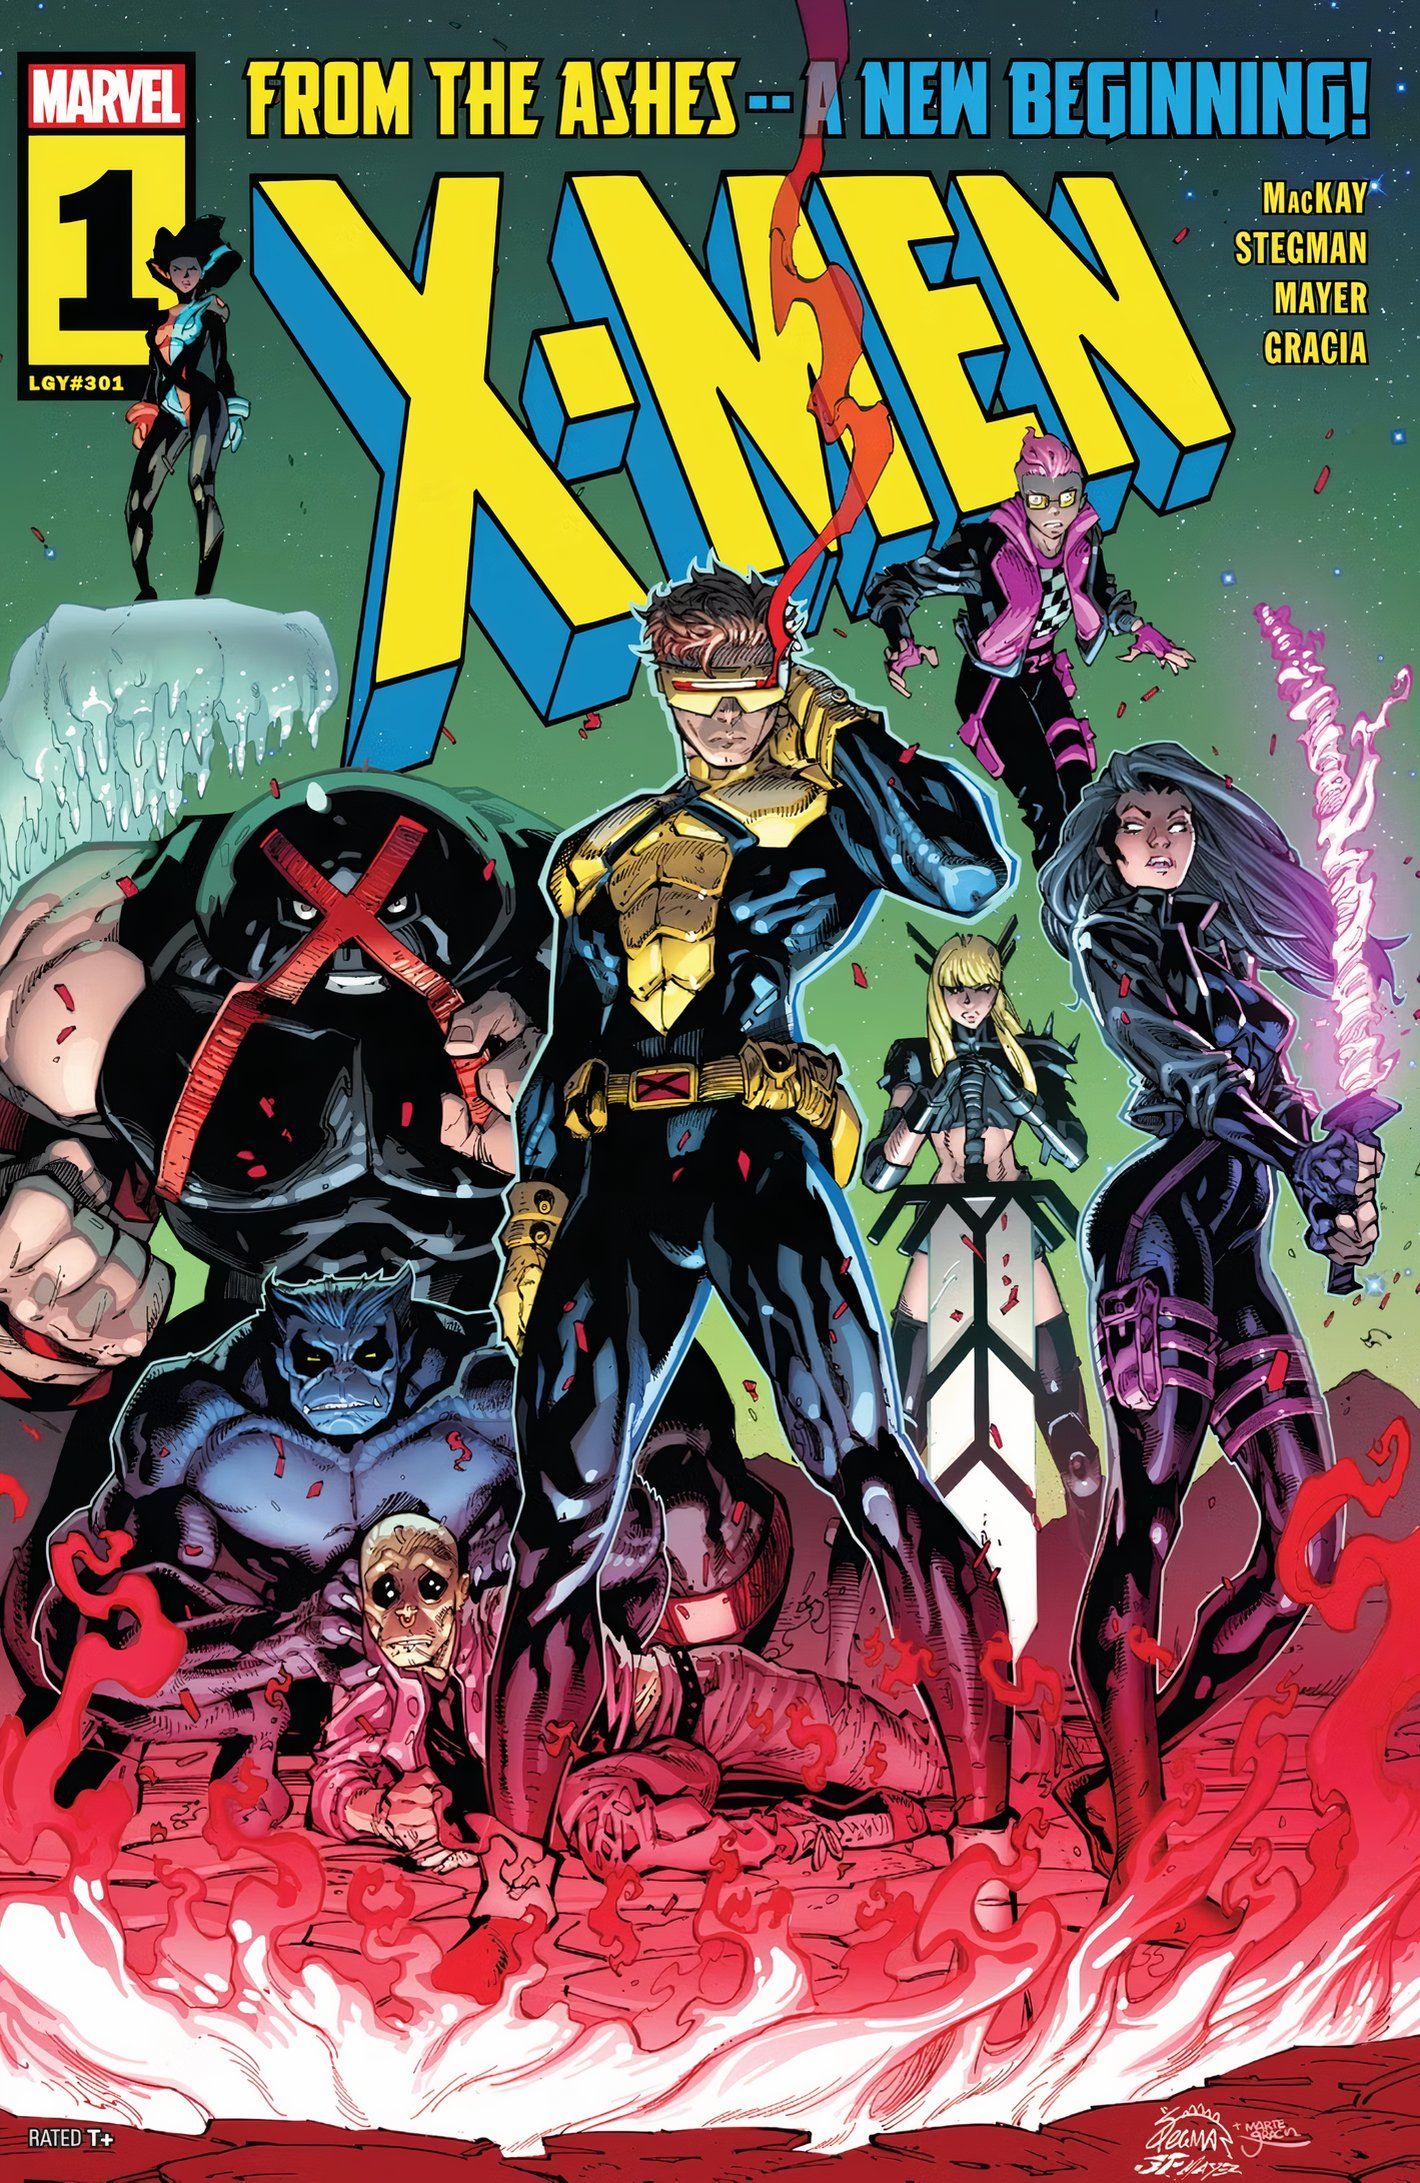 Cyclops, Psylock, Juggernaut, Magik, and Kid Omega stand together as X-Men. 